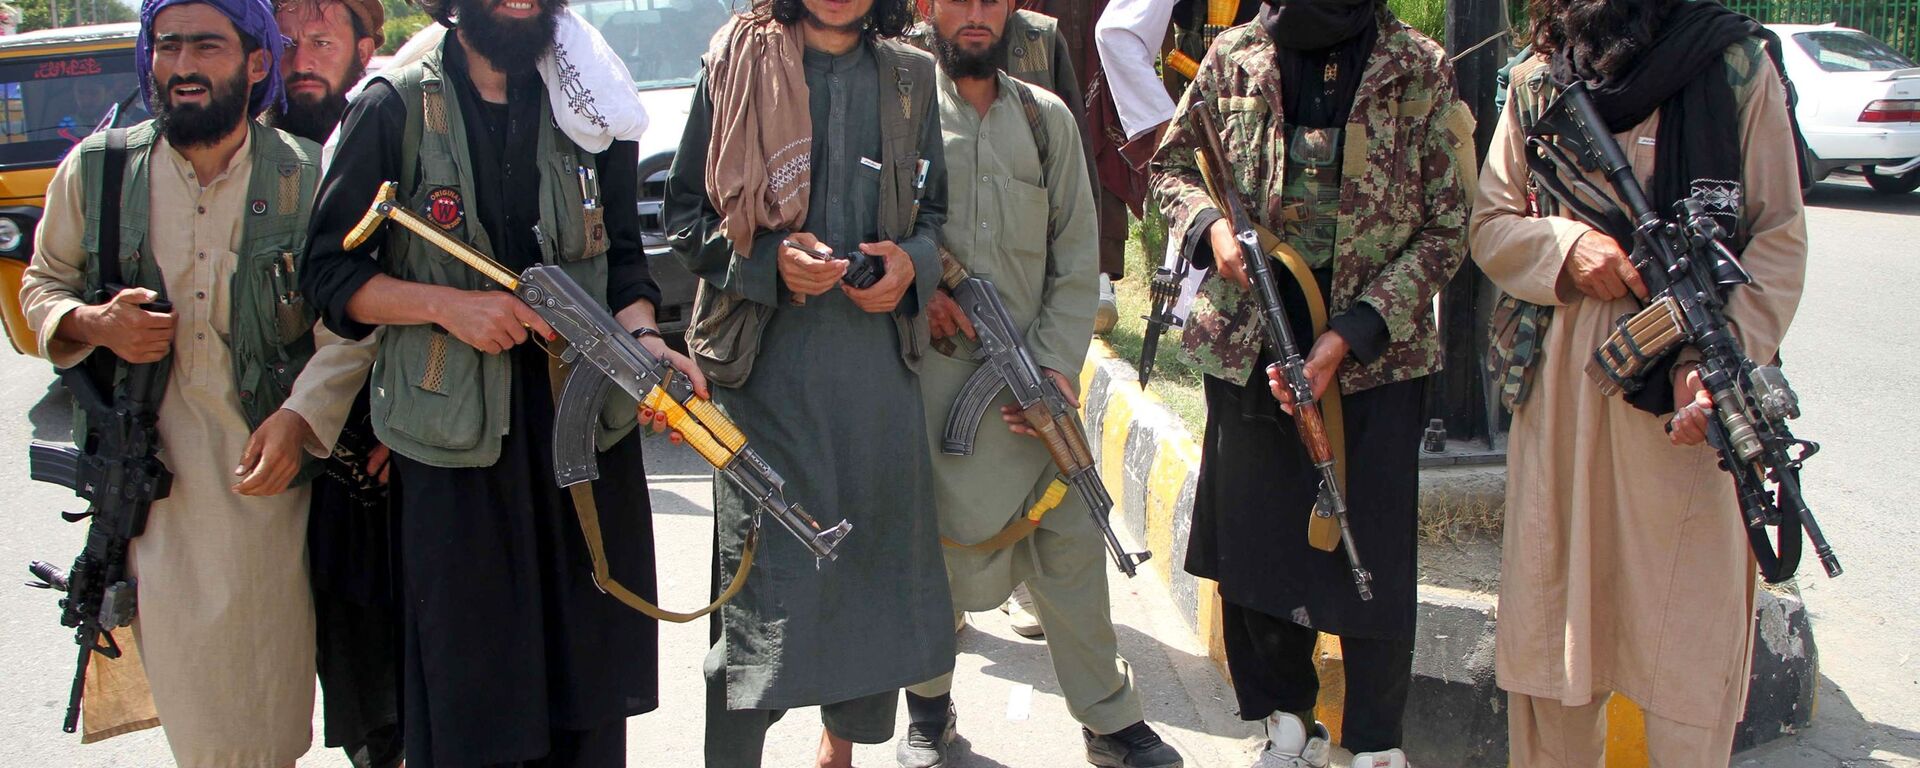 Боевики запрещенной в РФ террористической организации Талибан - Sputnik Южная Осетия, 1920, 23.09.2021